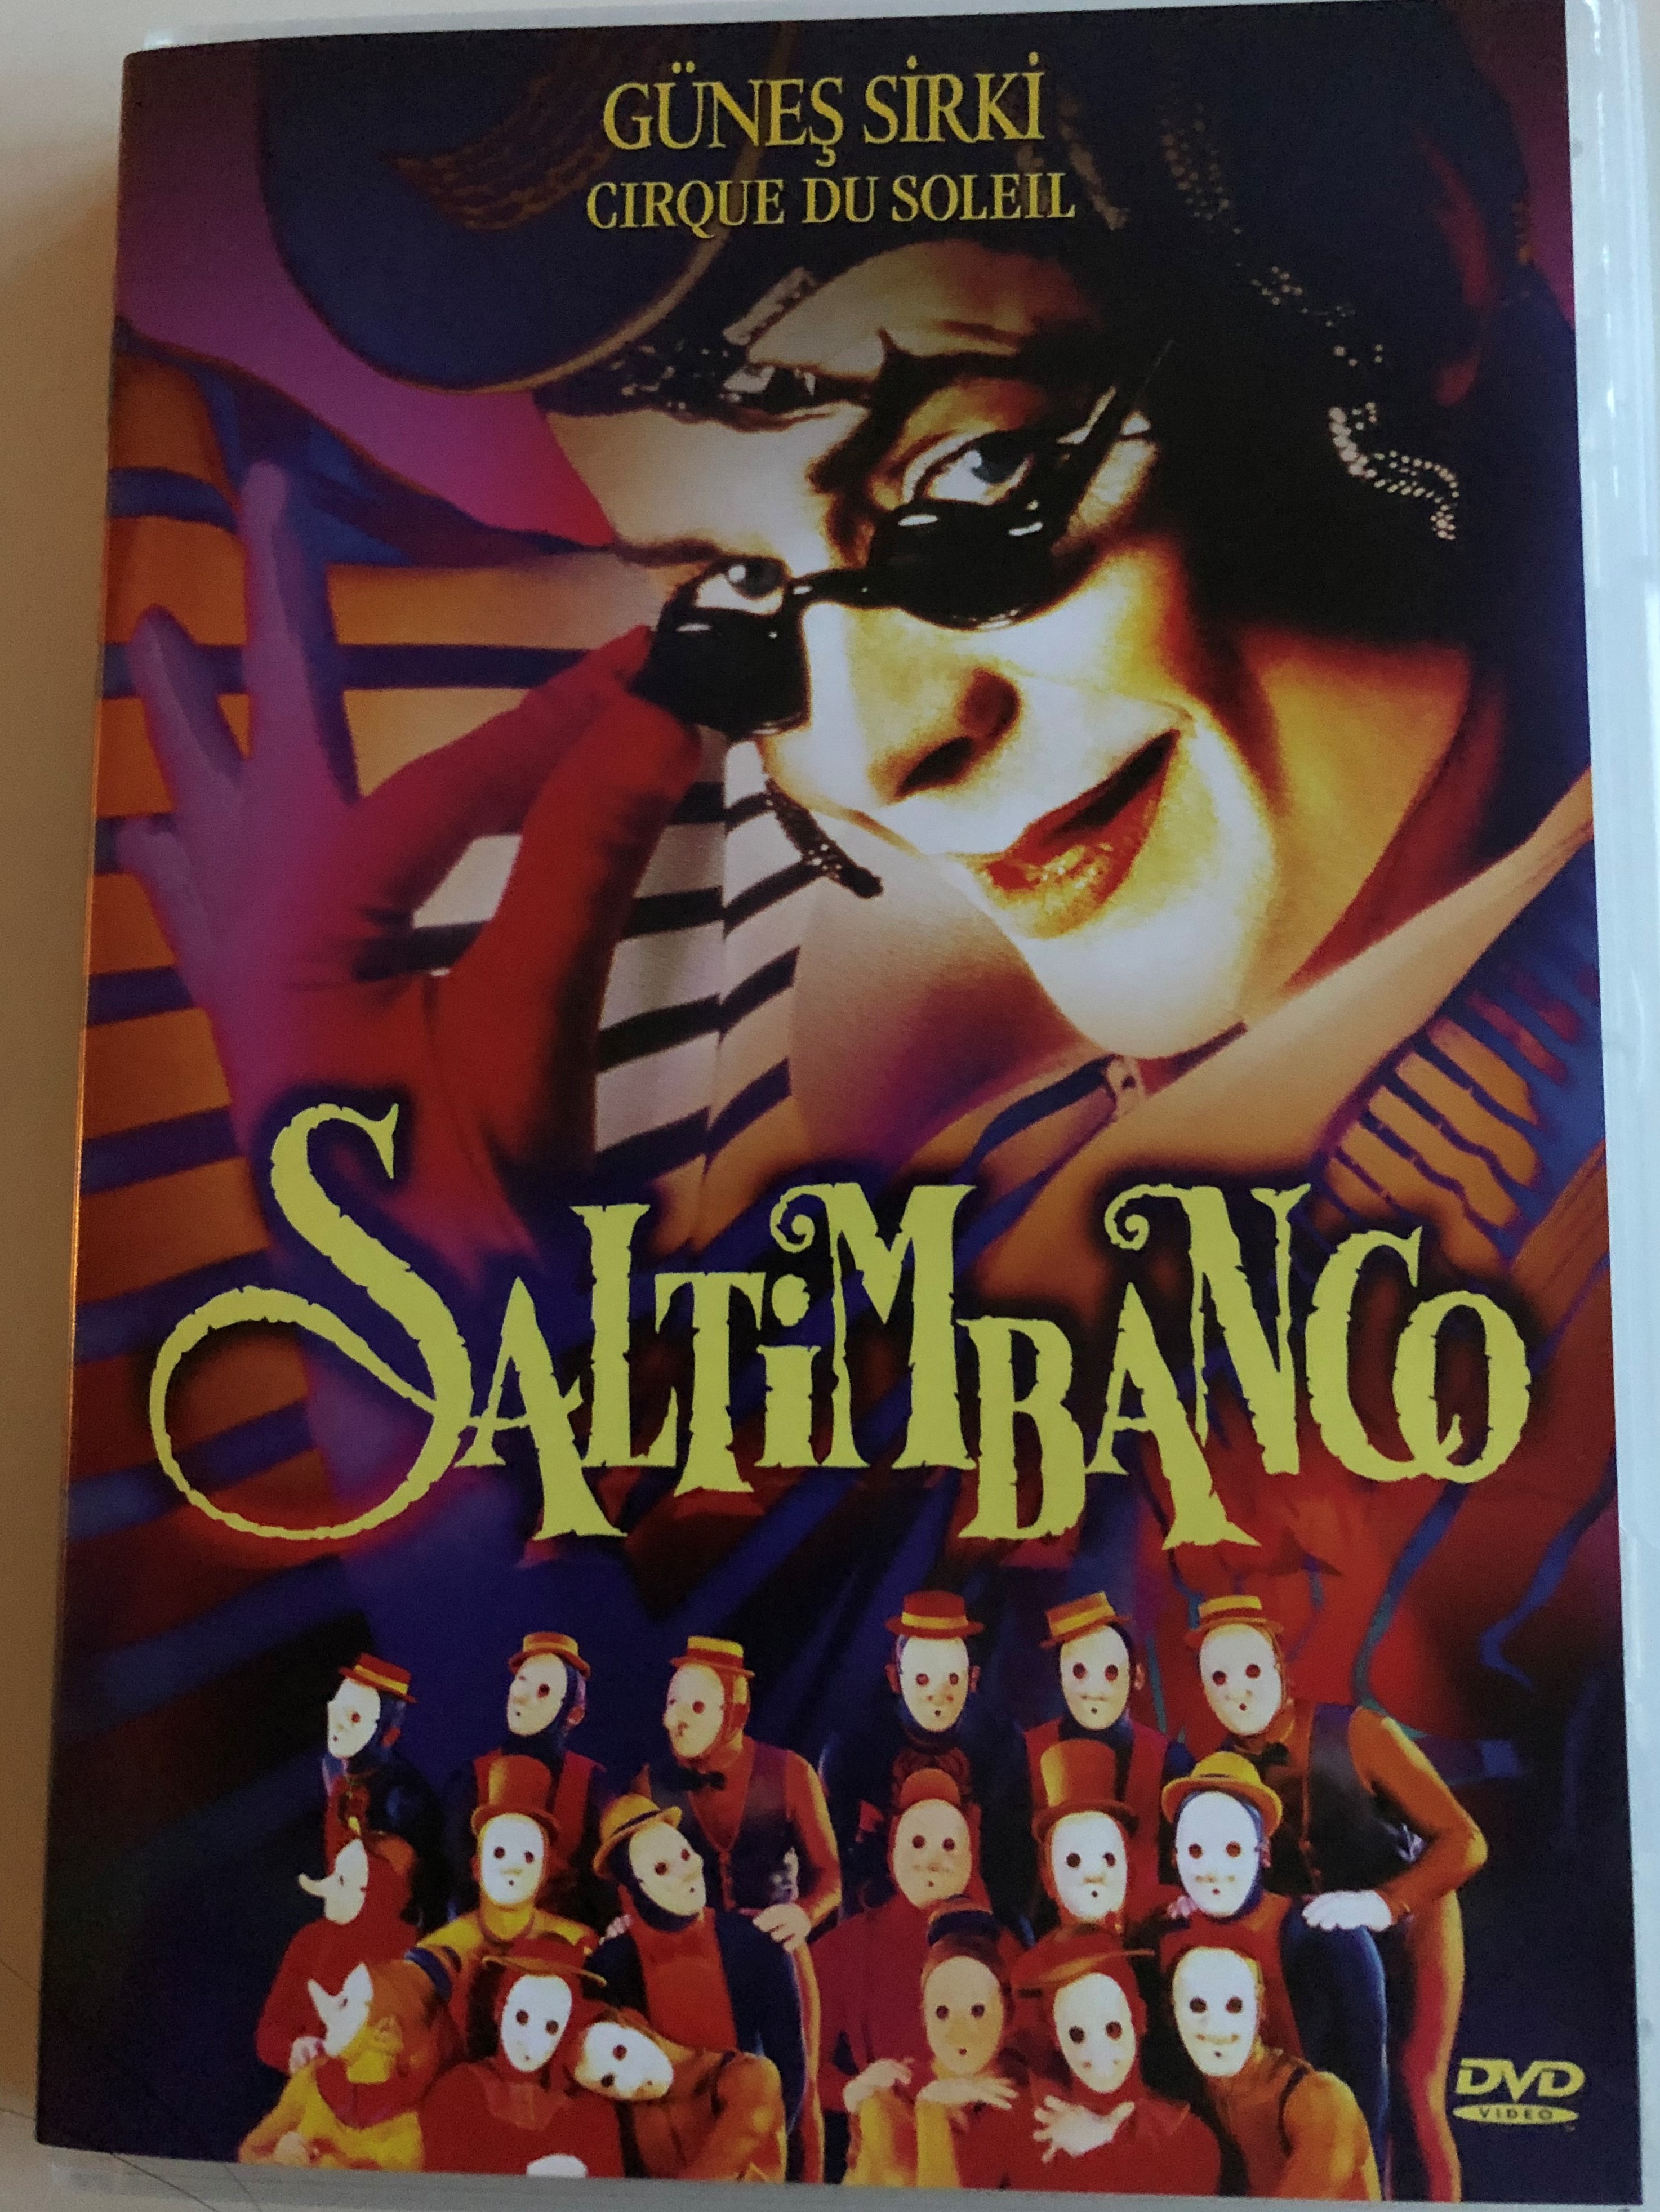 cirque-du-soleil-saltimbanco-dvd-1994-g-ne-sirki-saltimbanco-1.jpg